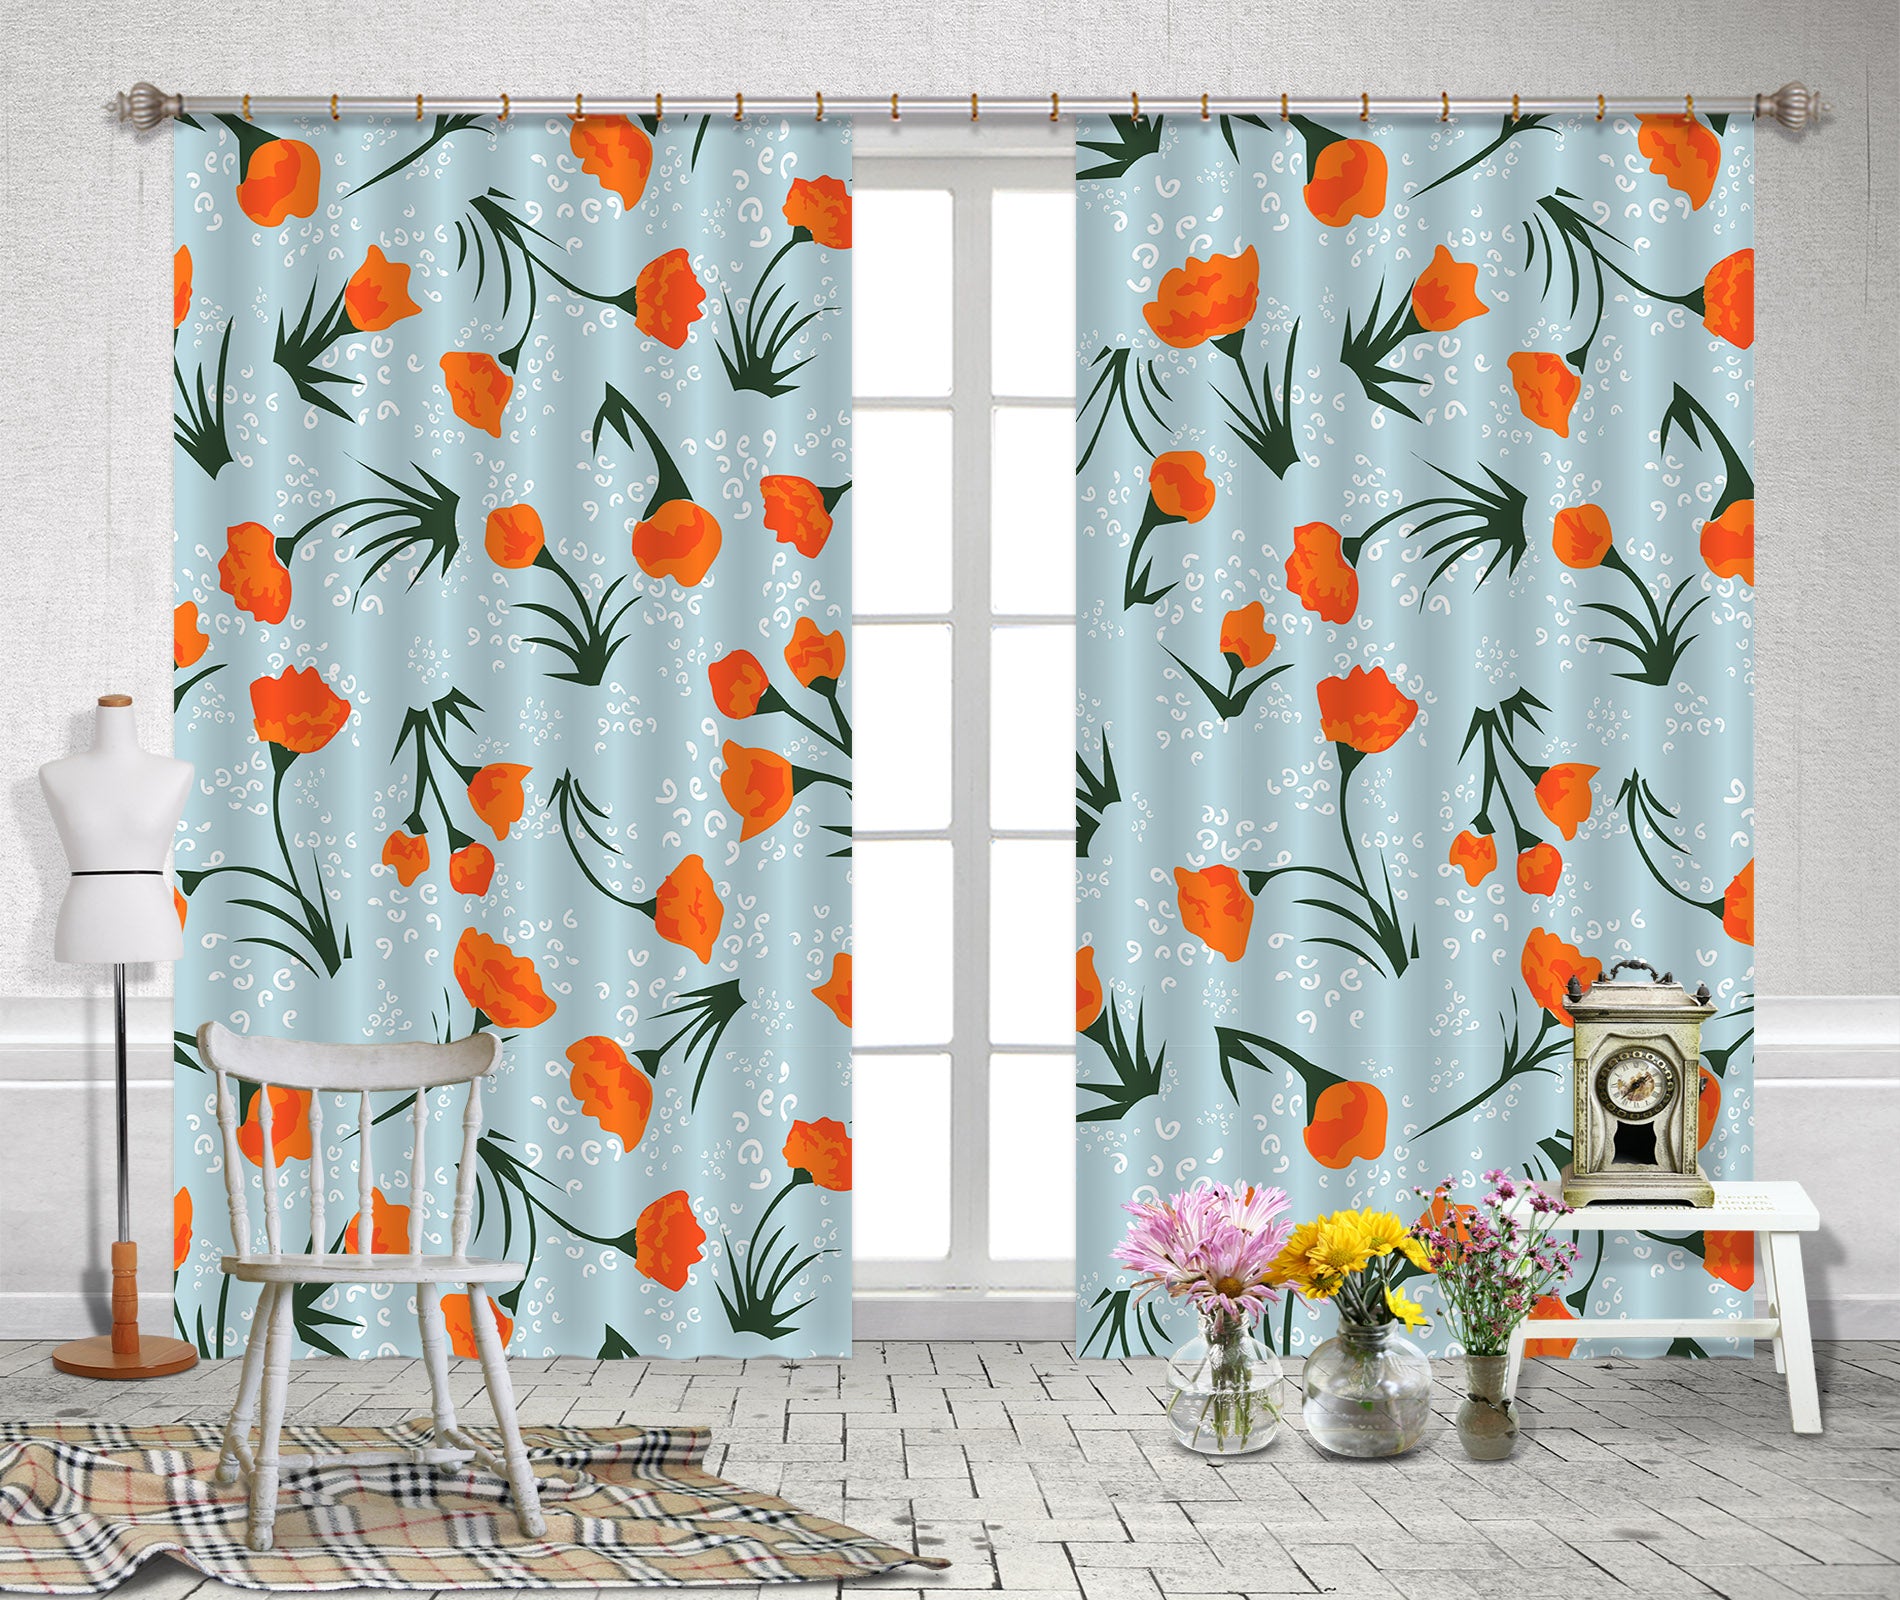 3D Red Flowers 11122 Kashmira Jayaprakash Curtain Curtains Drapes